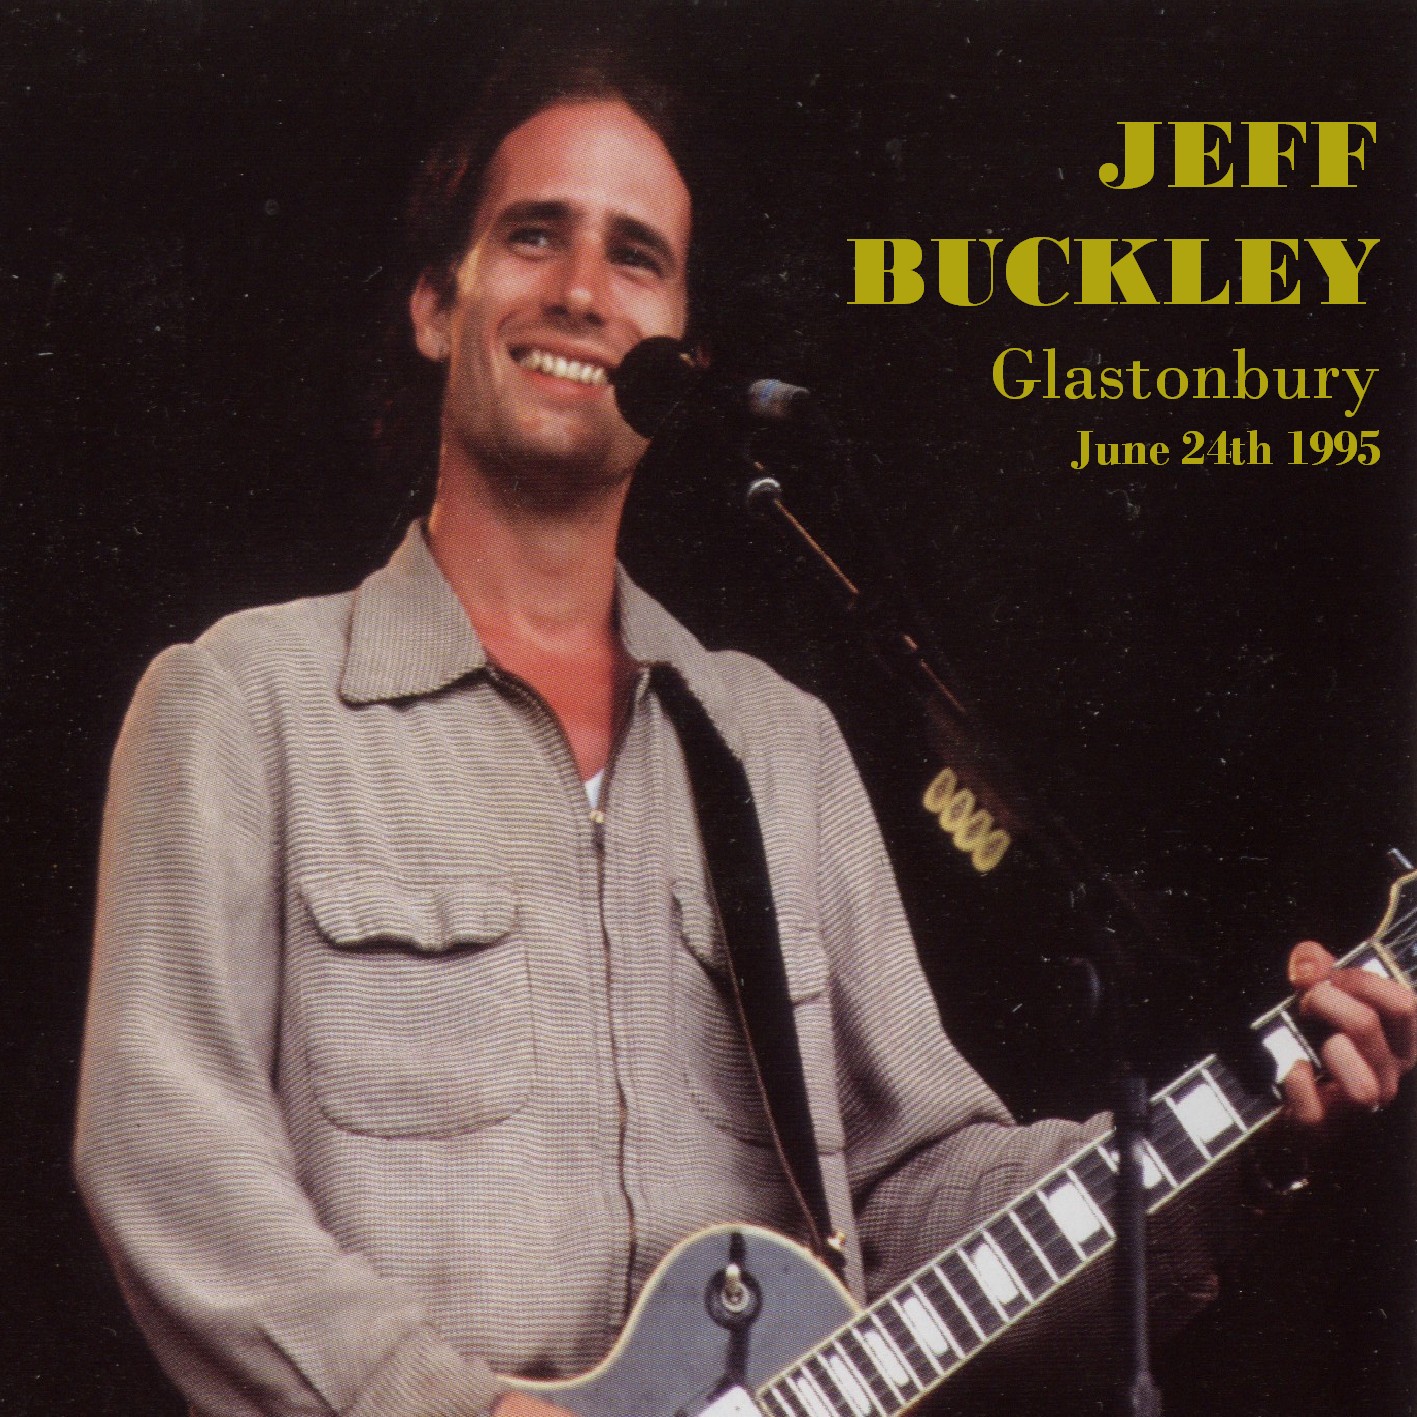 JeffBuckley1995-06-24GlastonburyFestivalPiltonUK (2).jpg